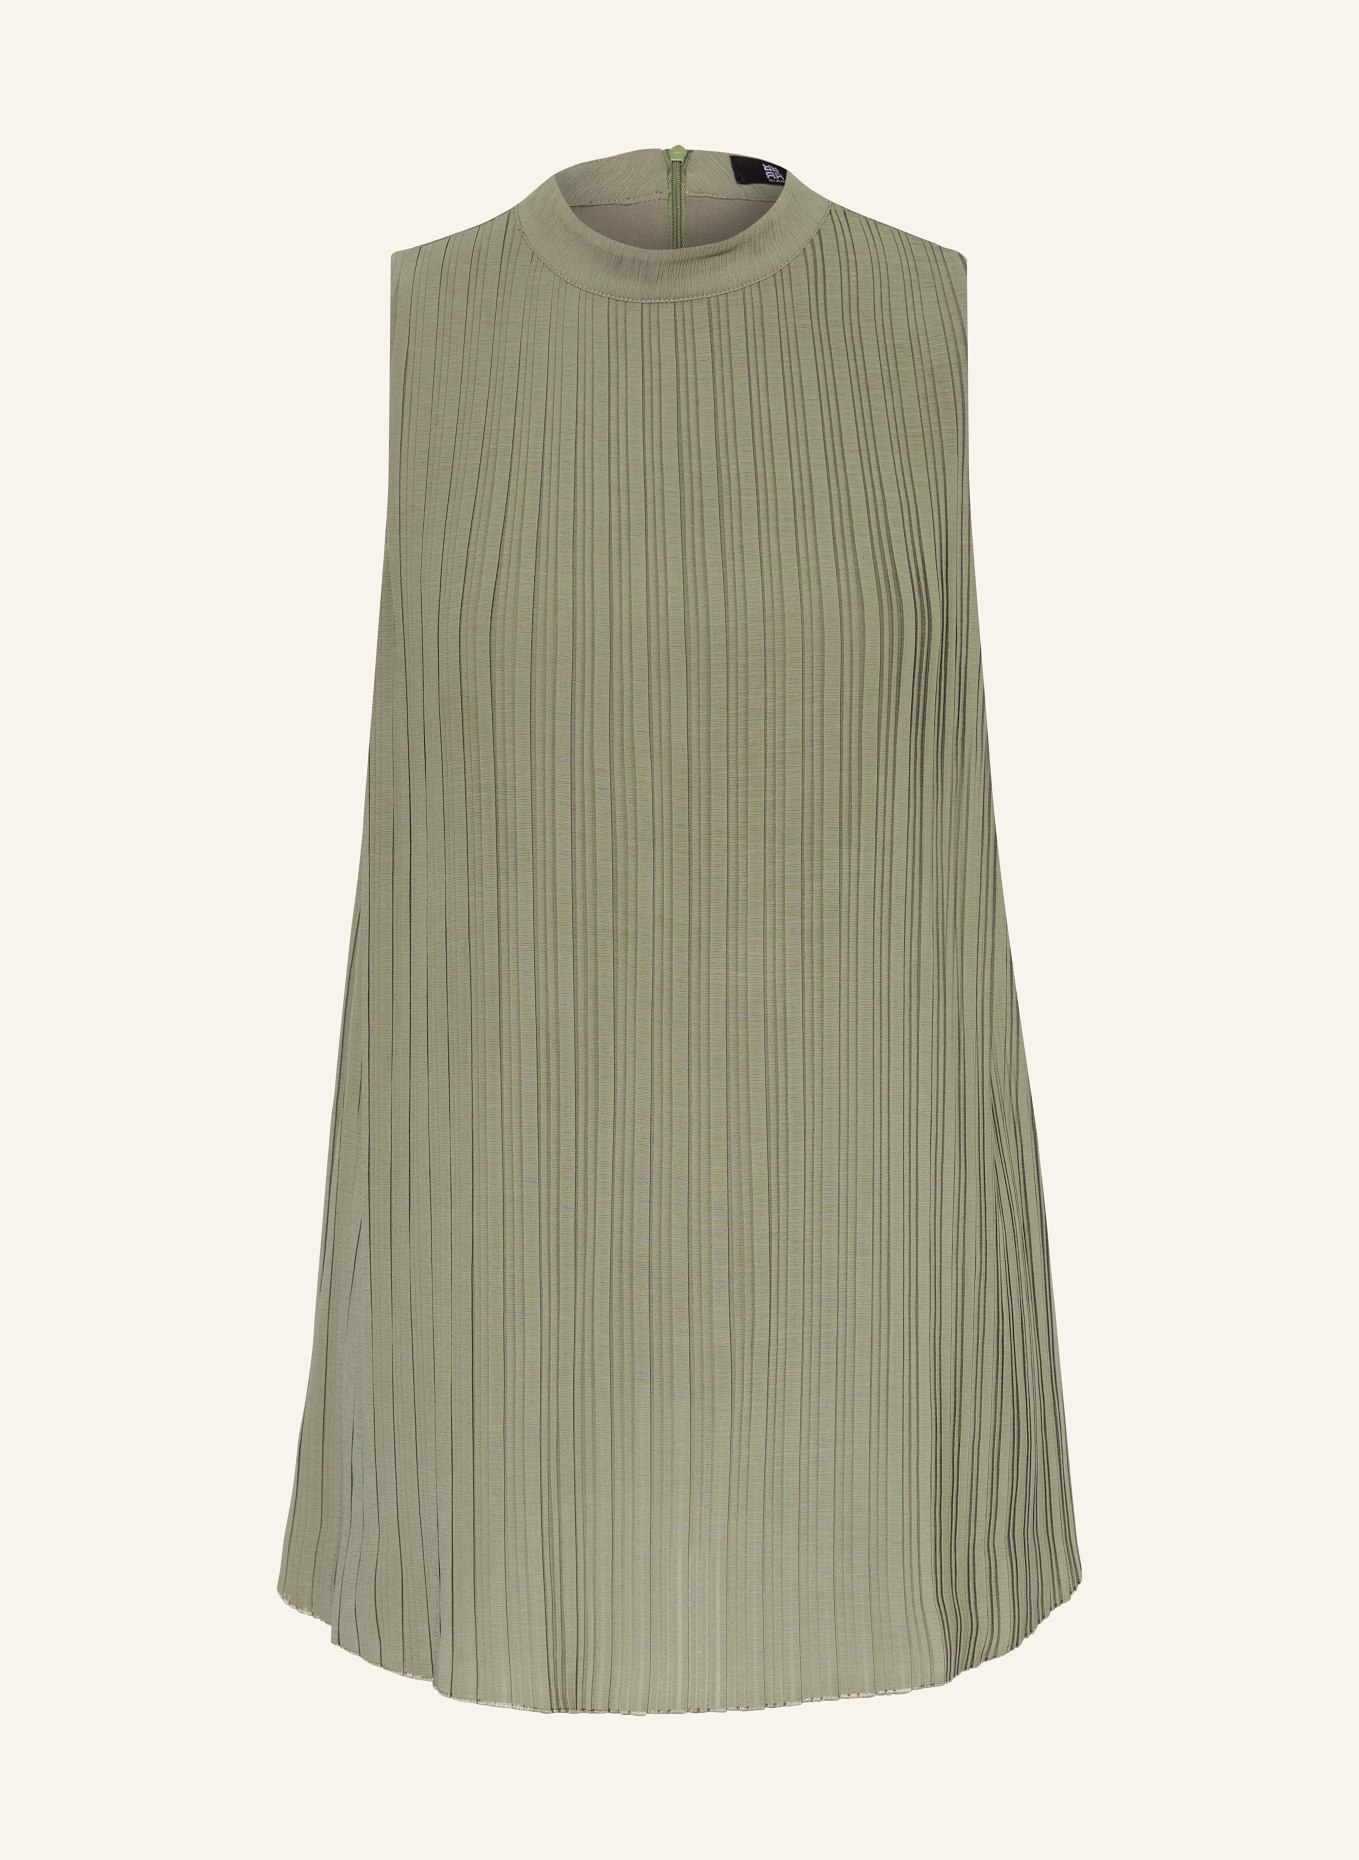 RIANI Bluse mit Plissee, Farbe: GRÜN (Bild 1)